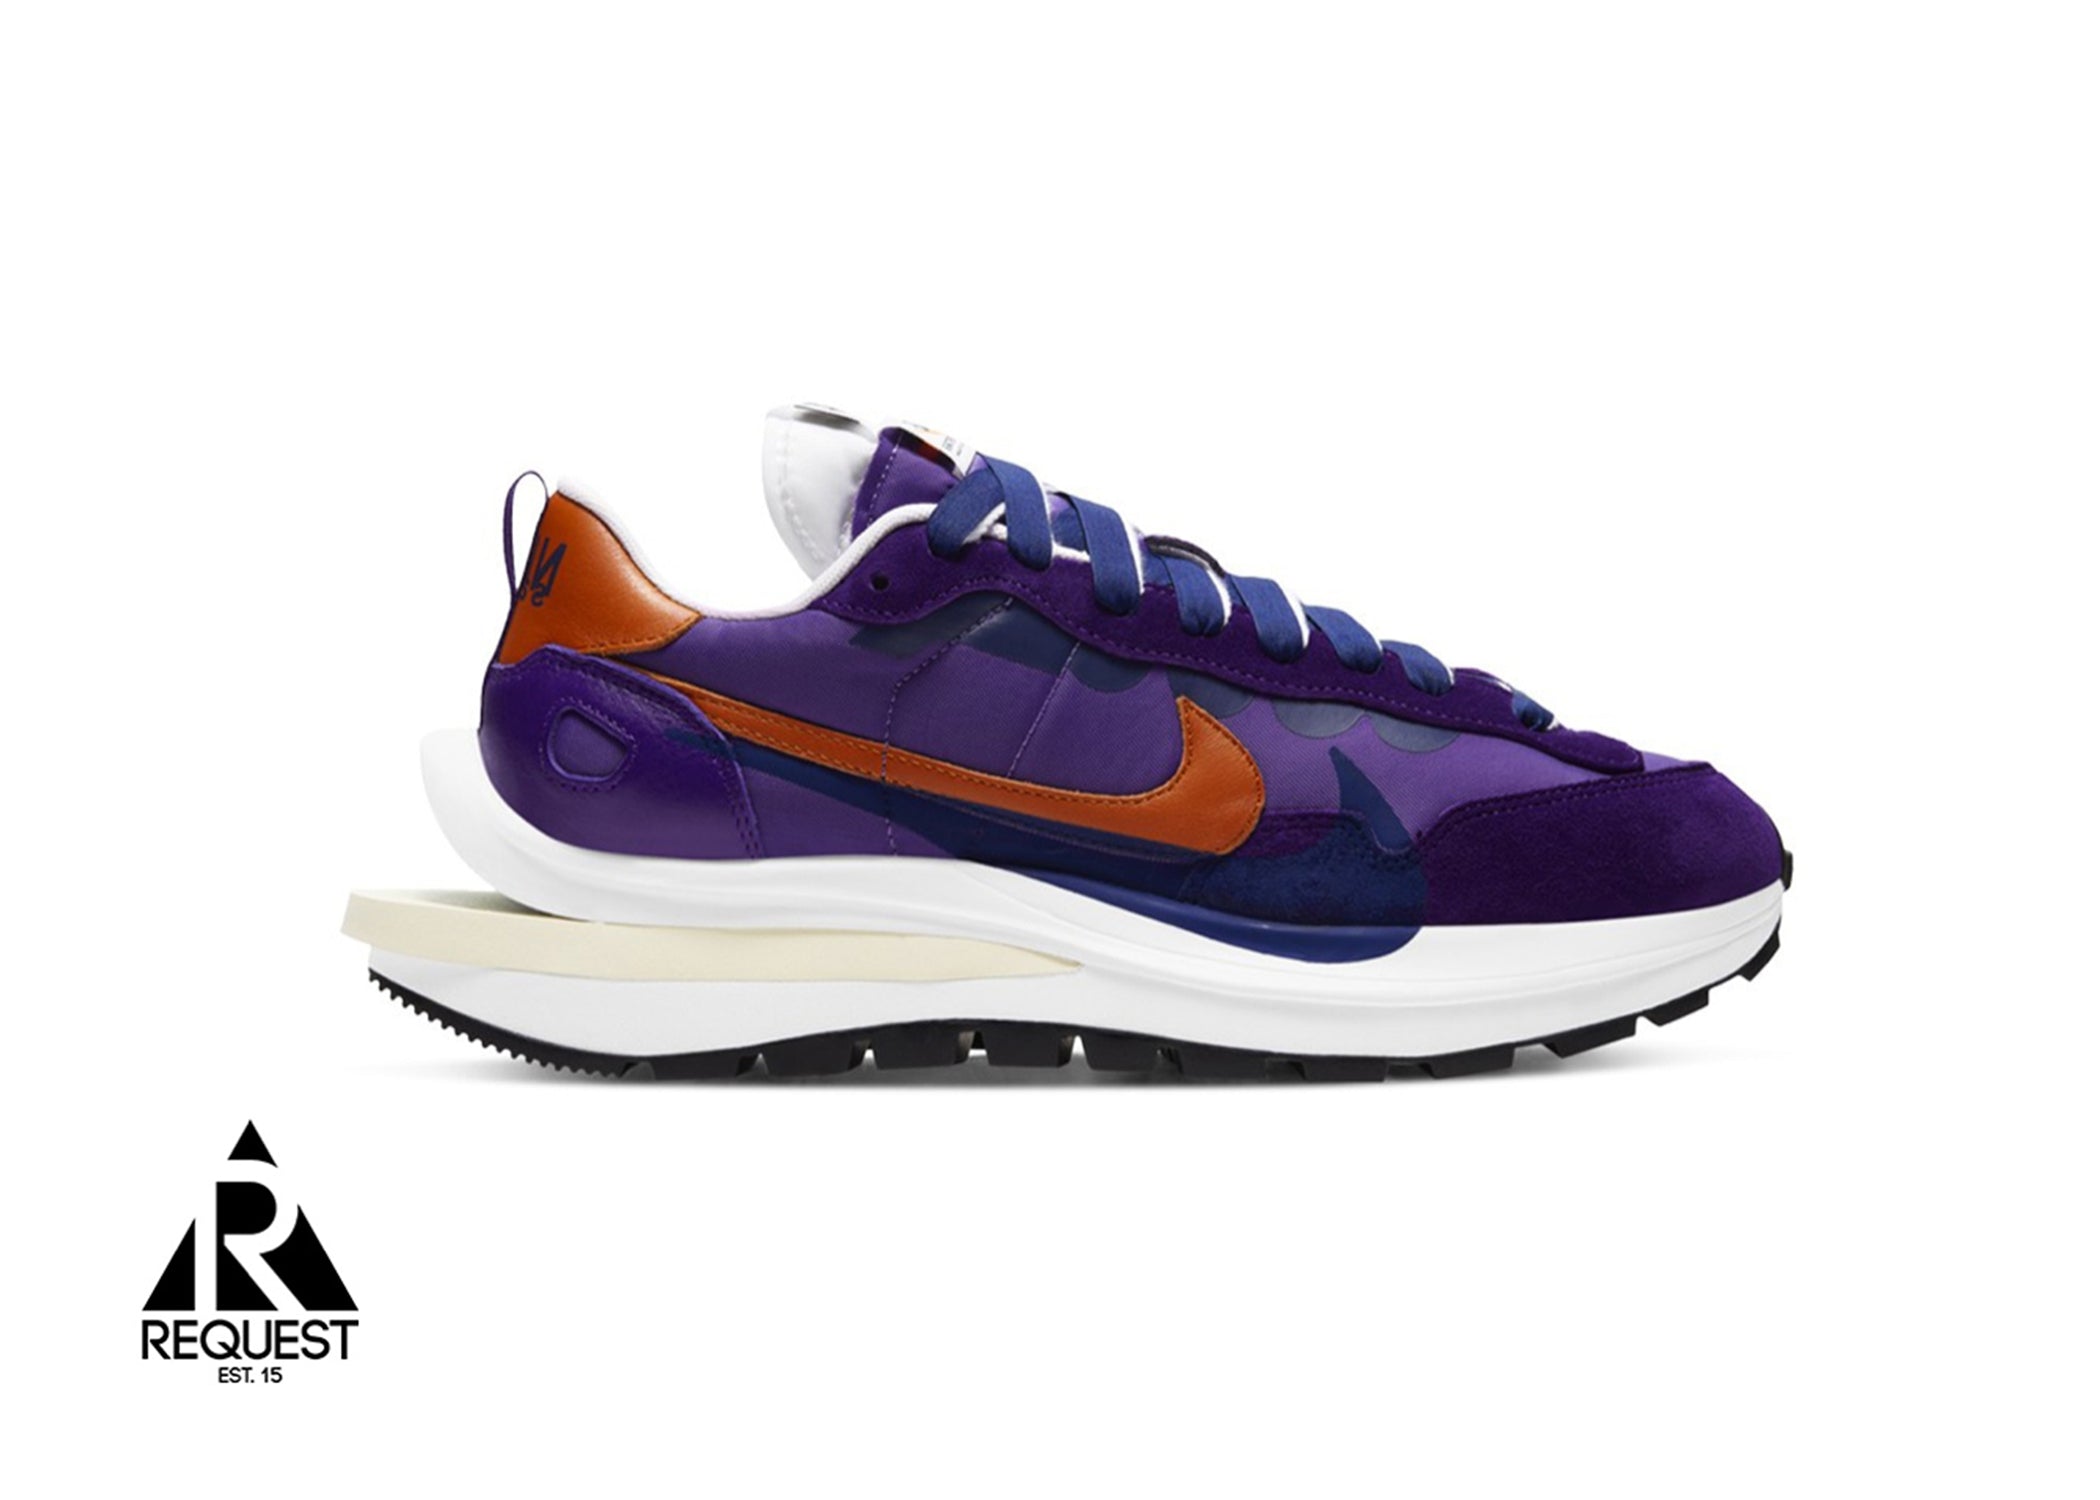 Nike Sacai Vaporwaffle “Dark Iris”